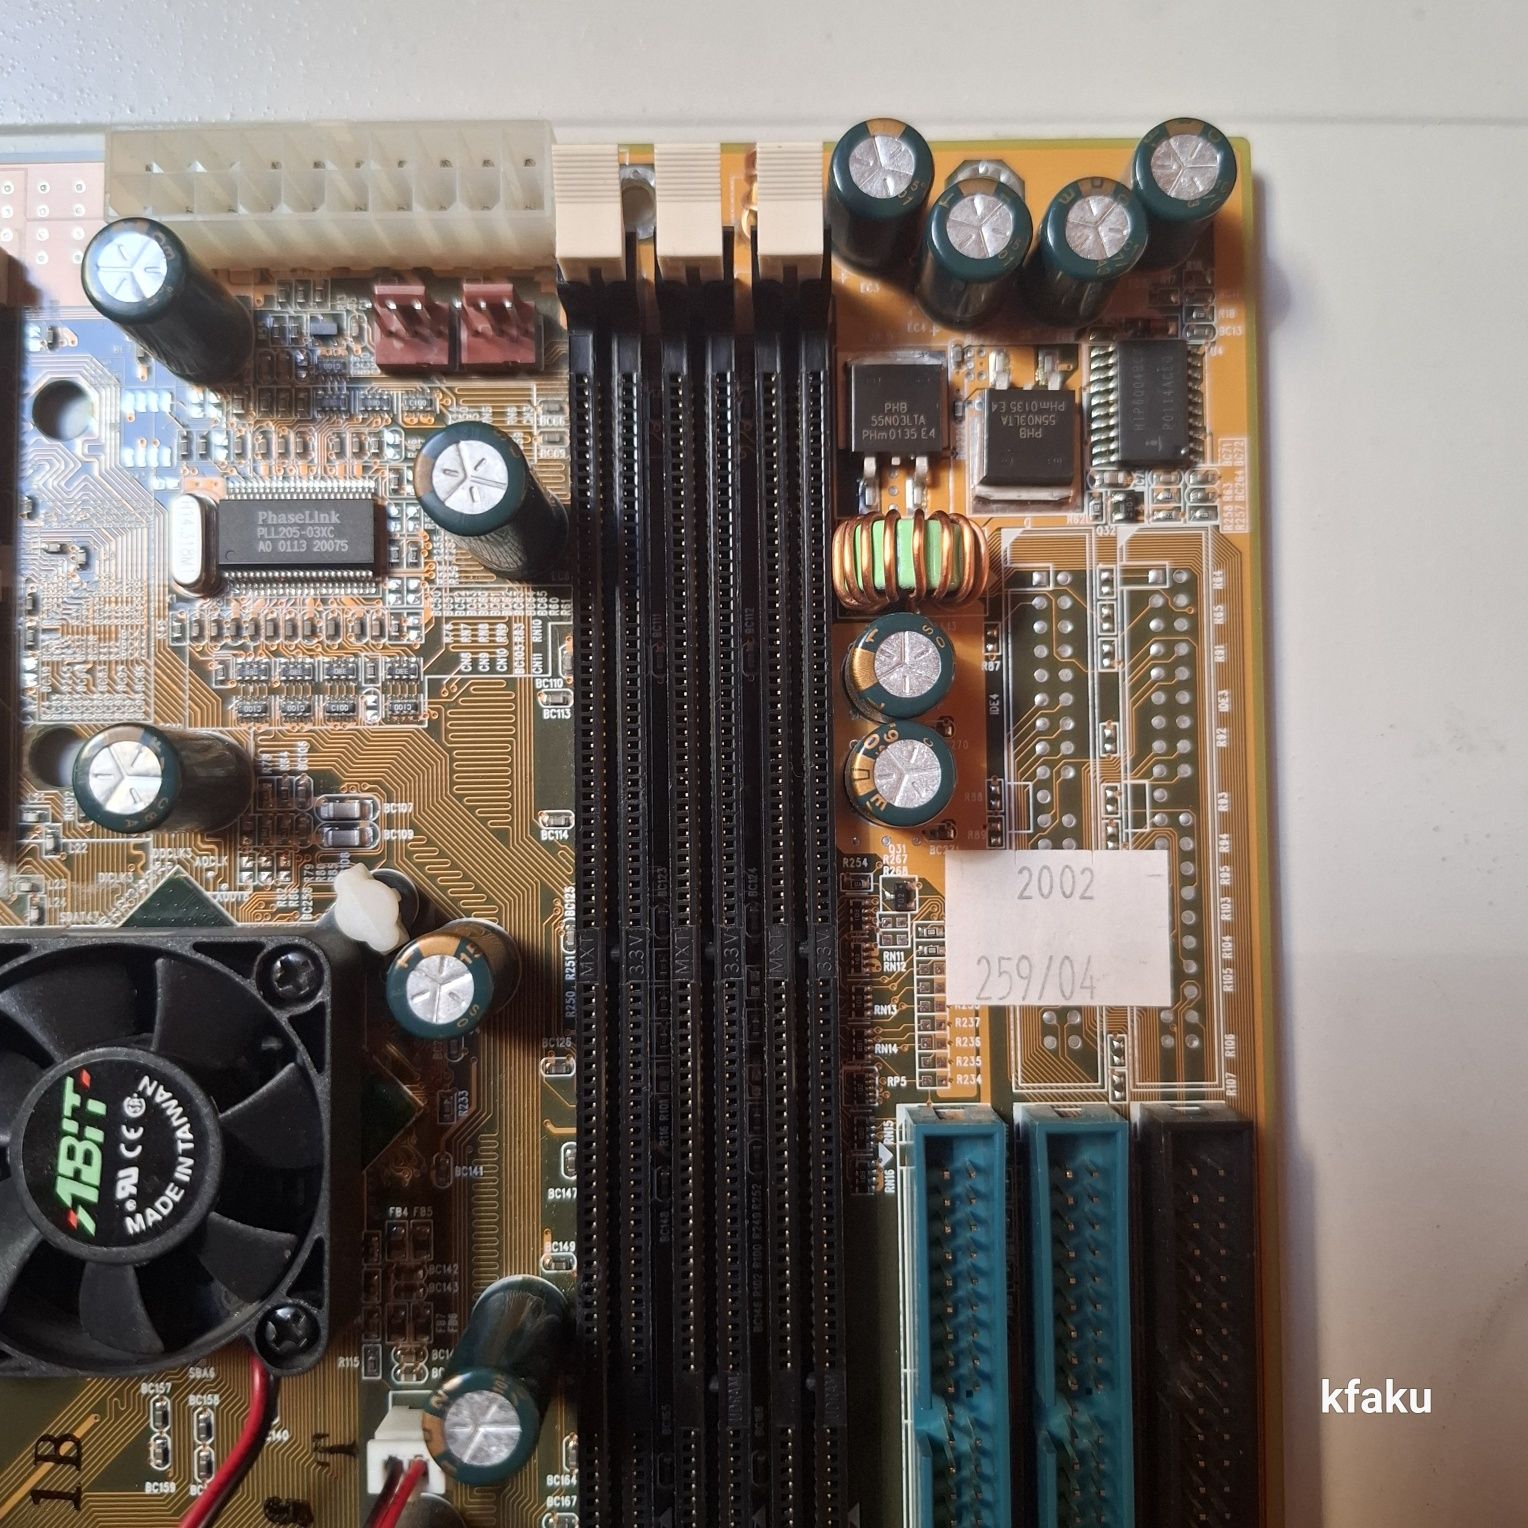 Płyta główna Abit KT7A socket 462, SDRAM, retro pc